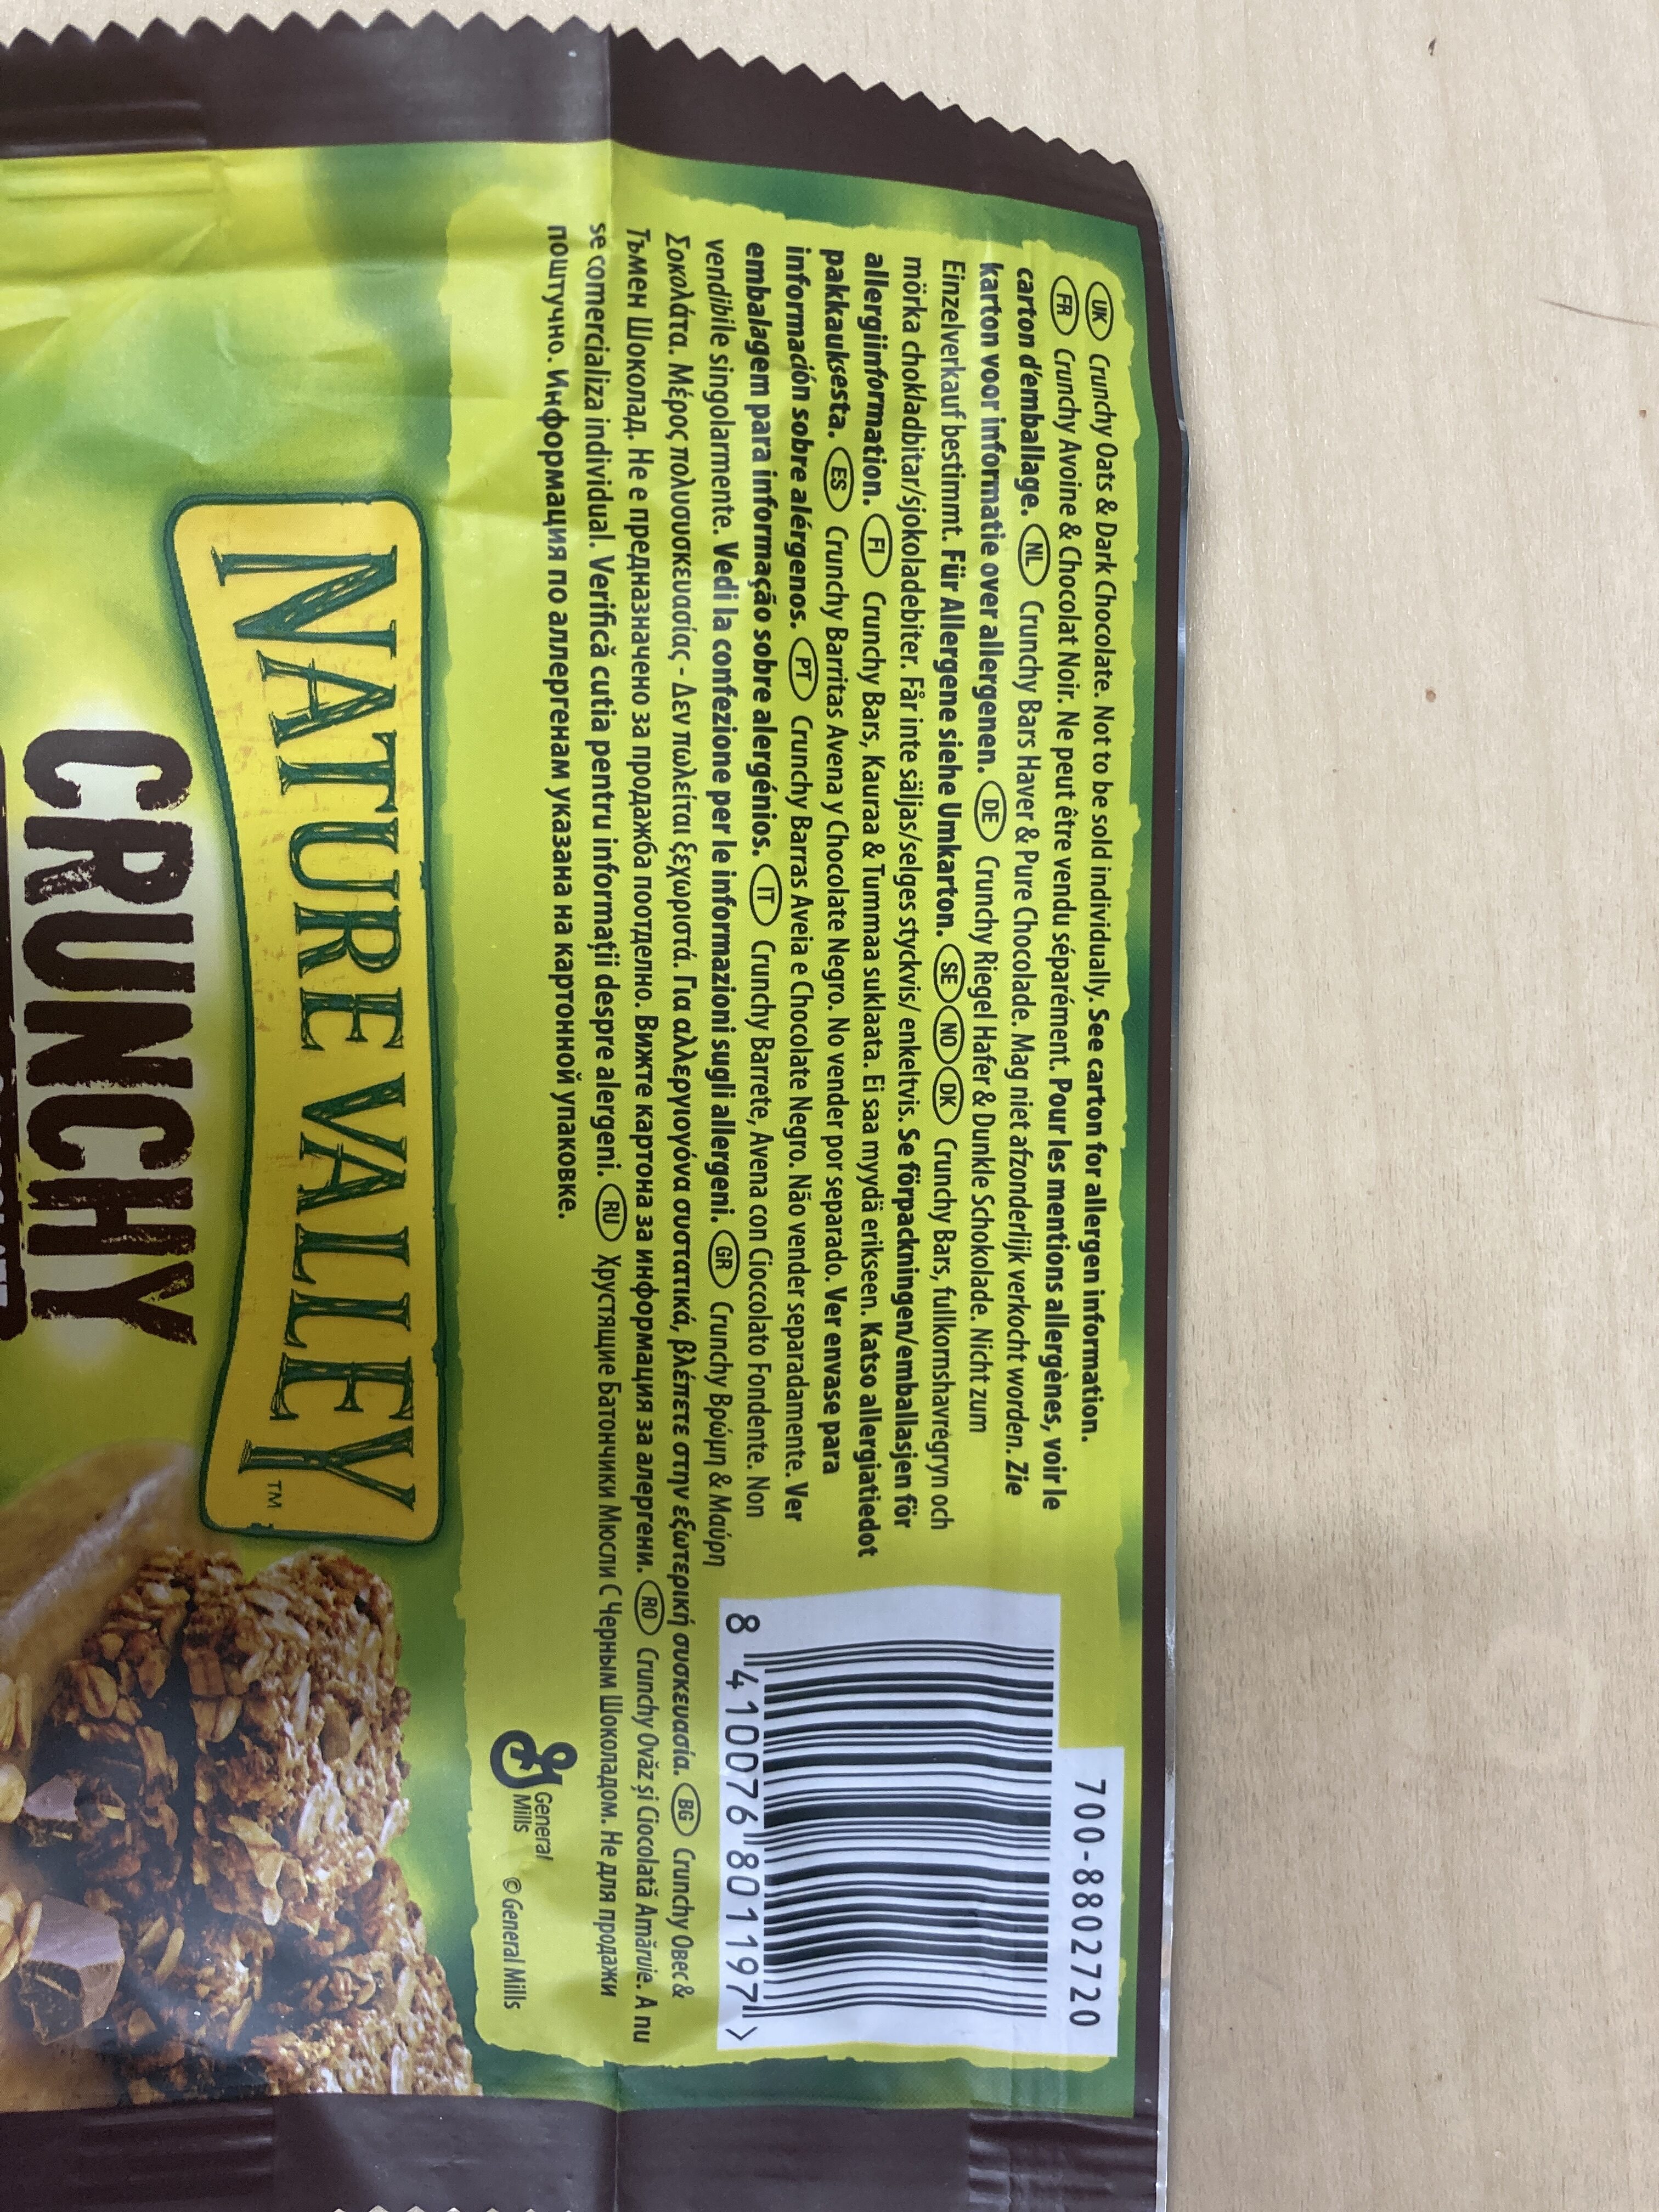 Crunchy Granola Oats - Ingredients - en